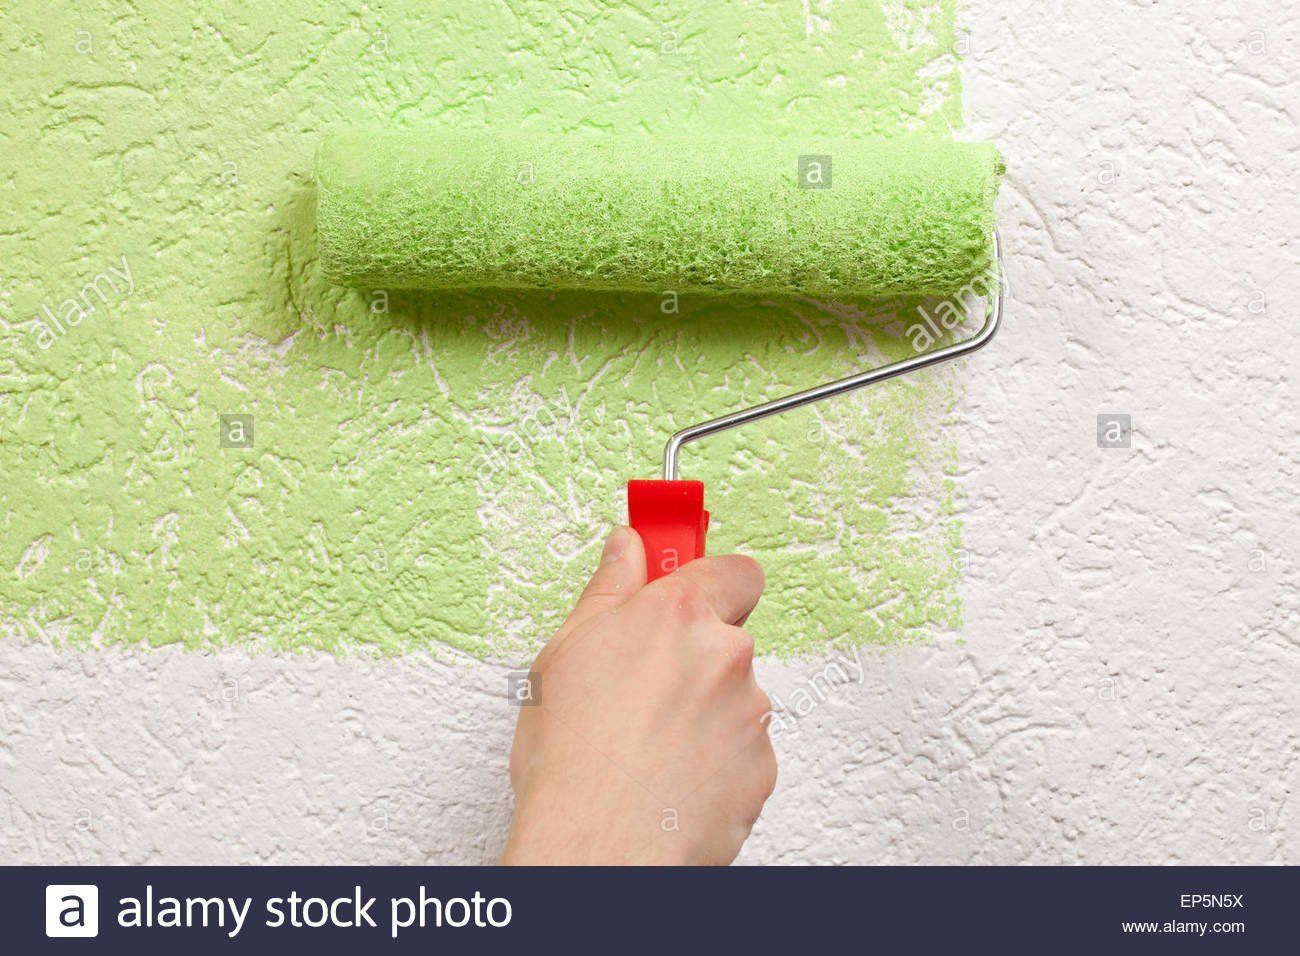 Можно красить деревья водоэмульсионной краской. Краска для стен в квартире. Окрашивание стен краской. Водоэмульсионная краска для стен. Покрашенные стены.